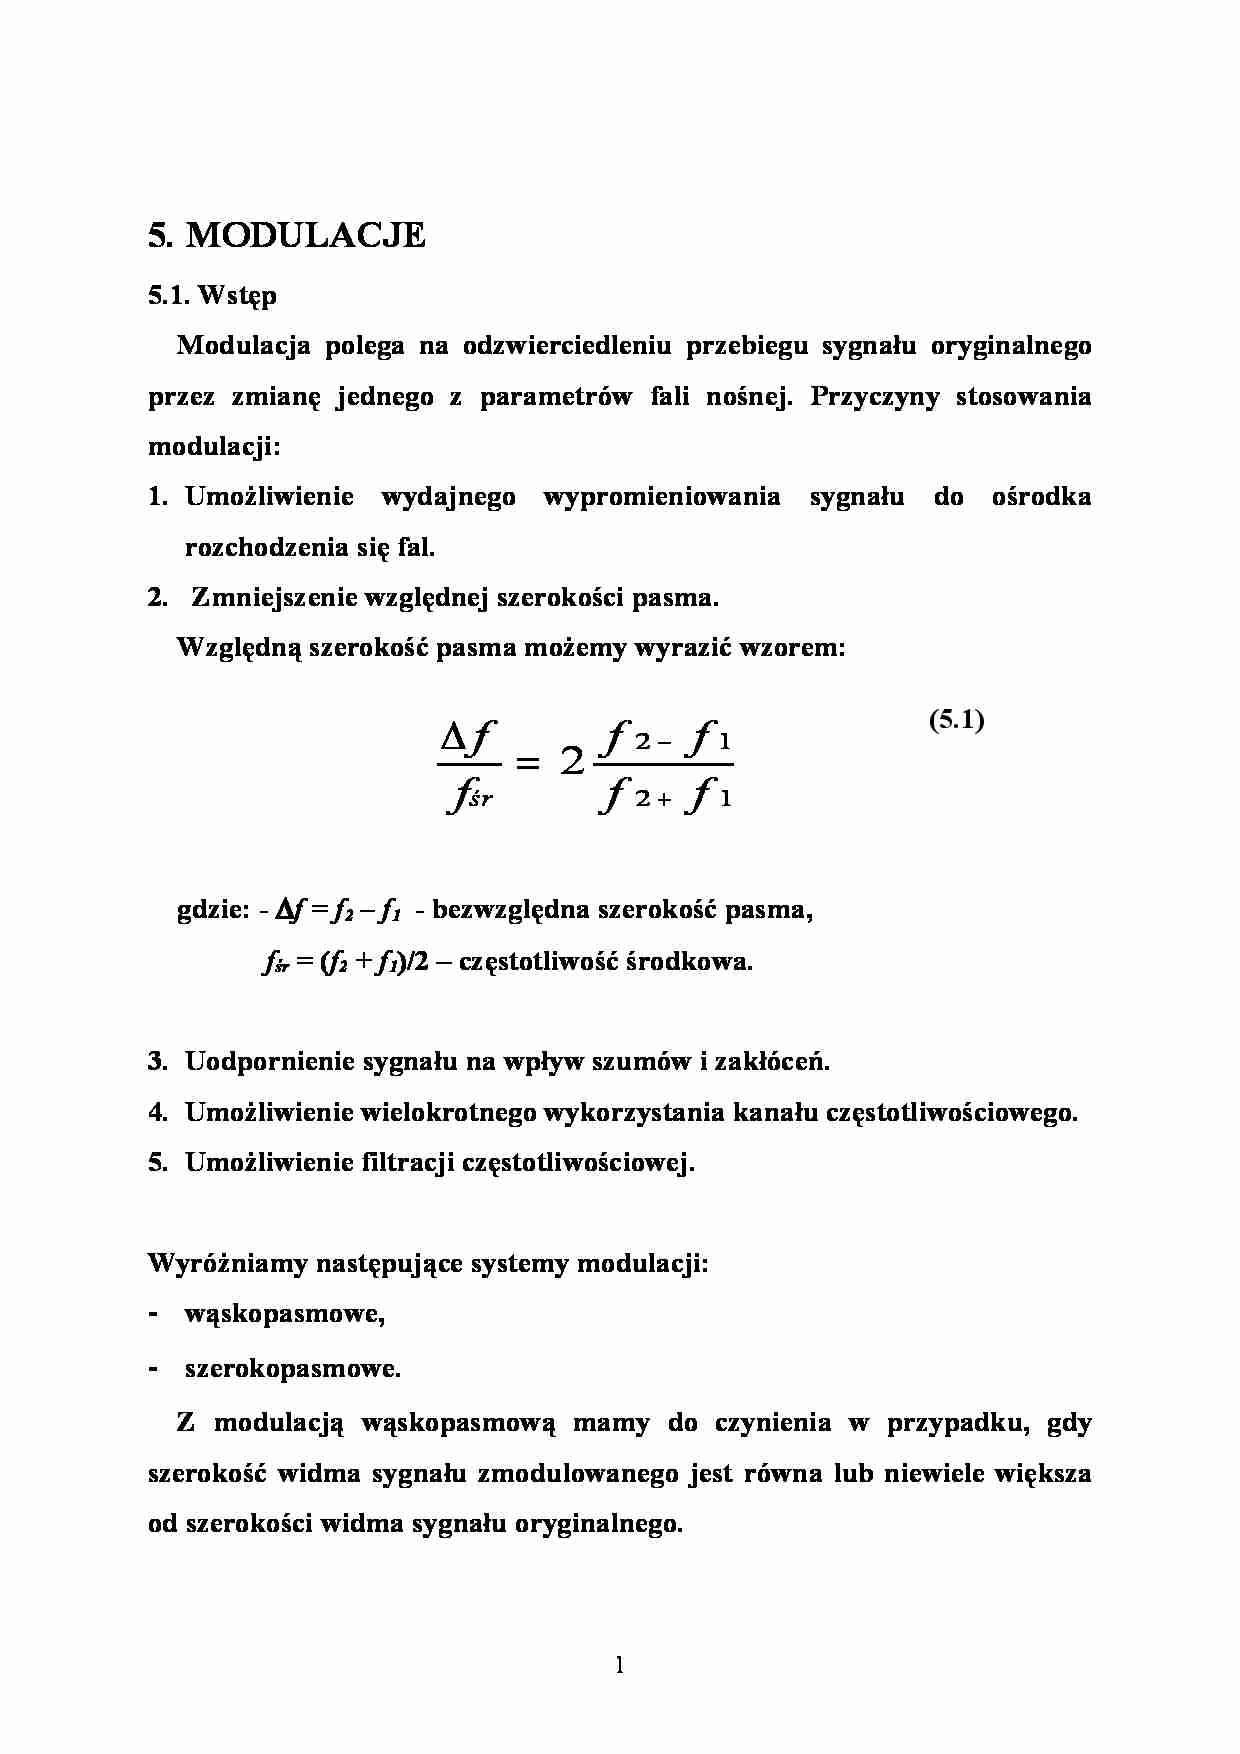 Systemy radiokominkacyjne  - modulacje - strona 1